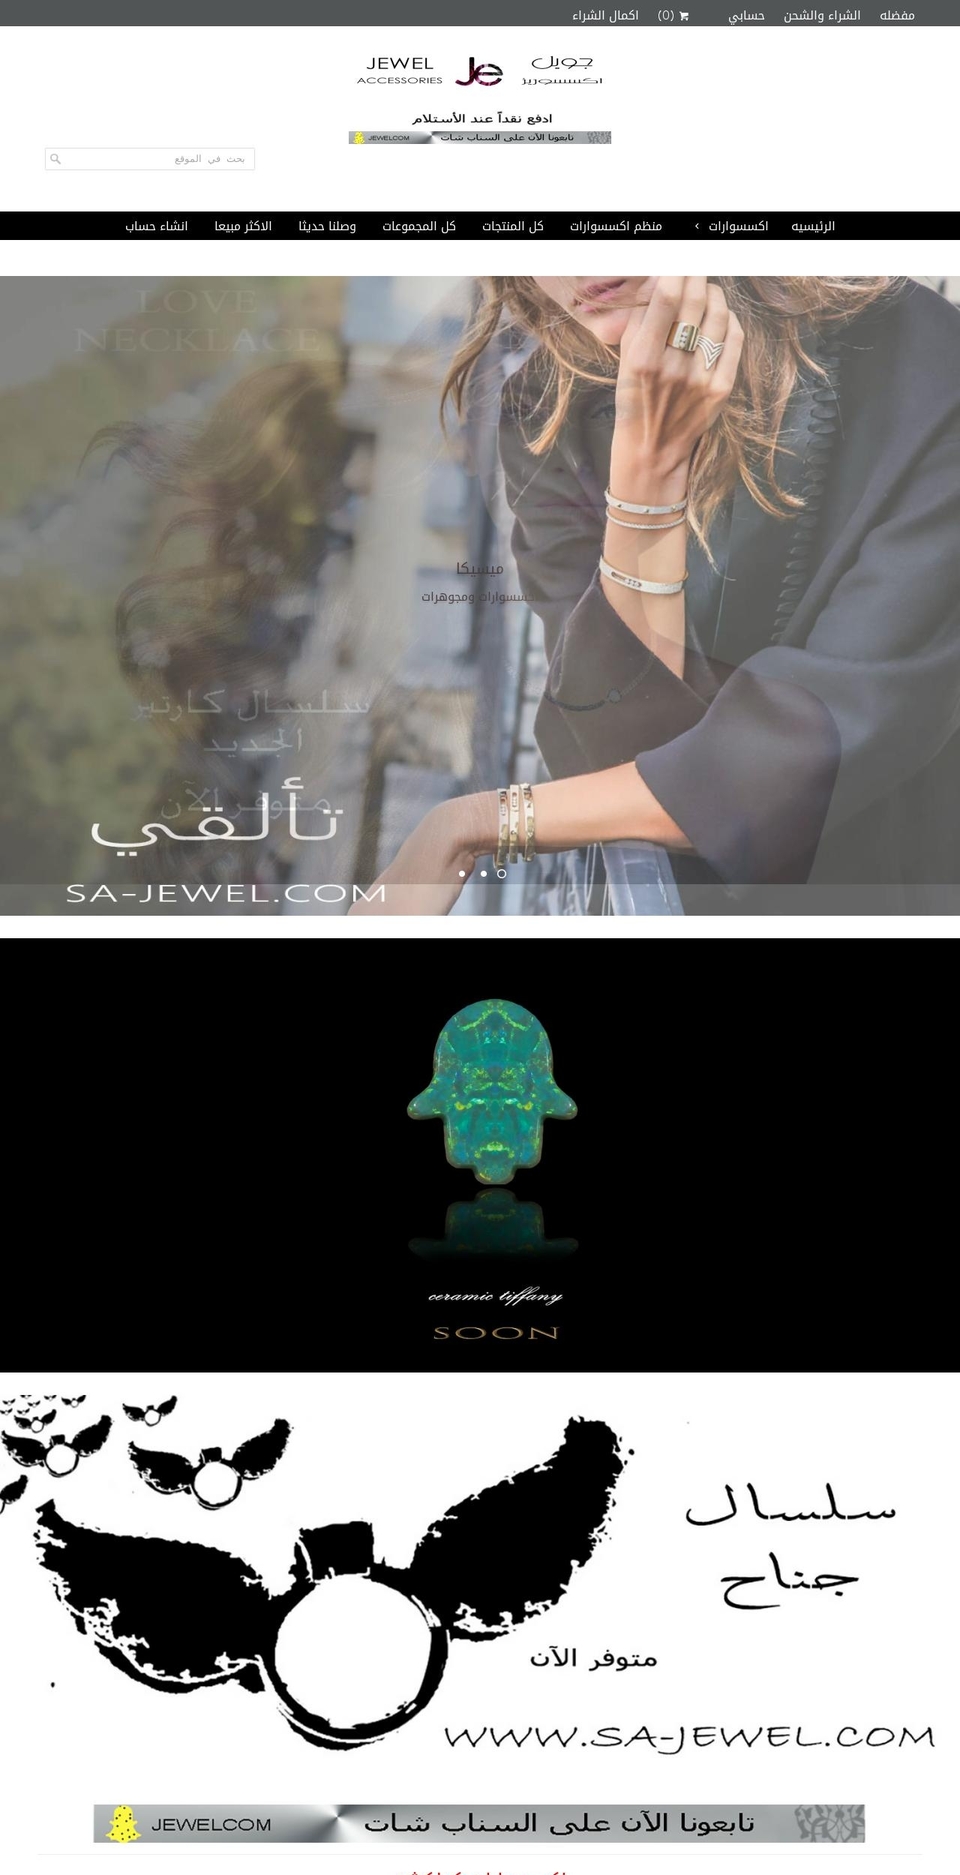 sa-jewel.com shopify website screenshot